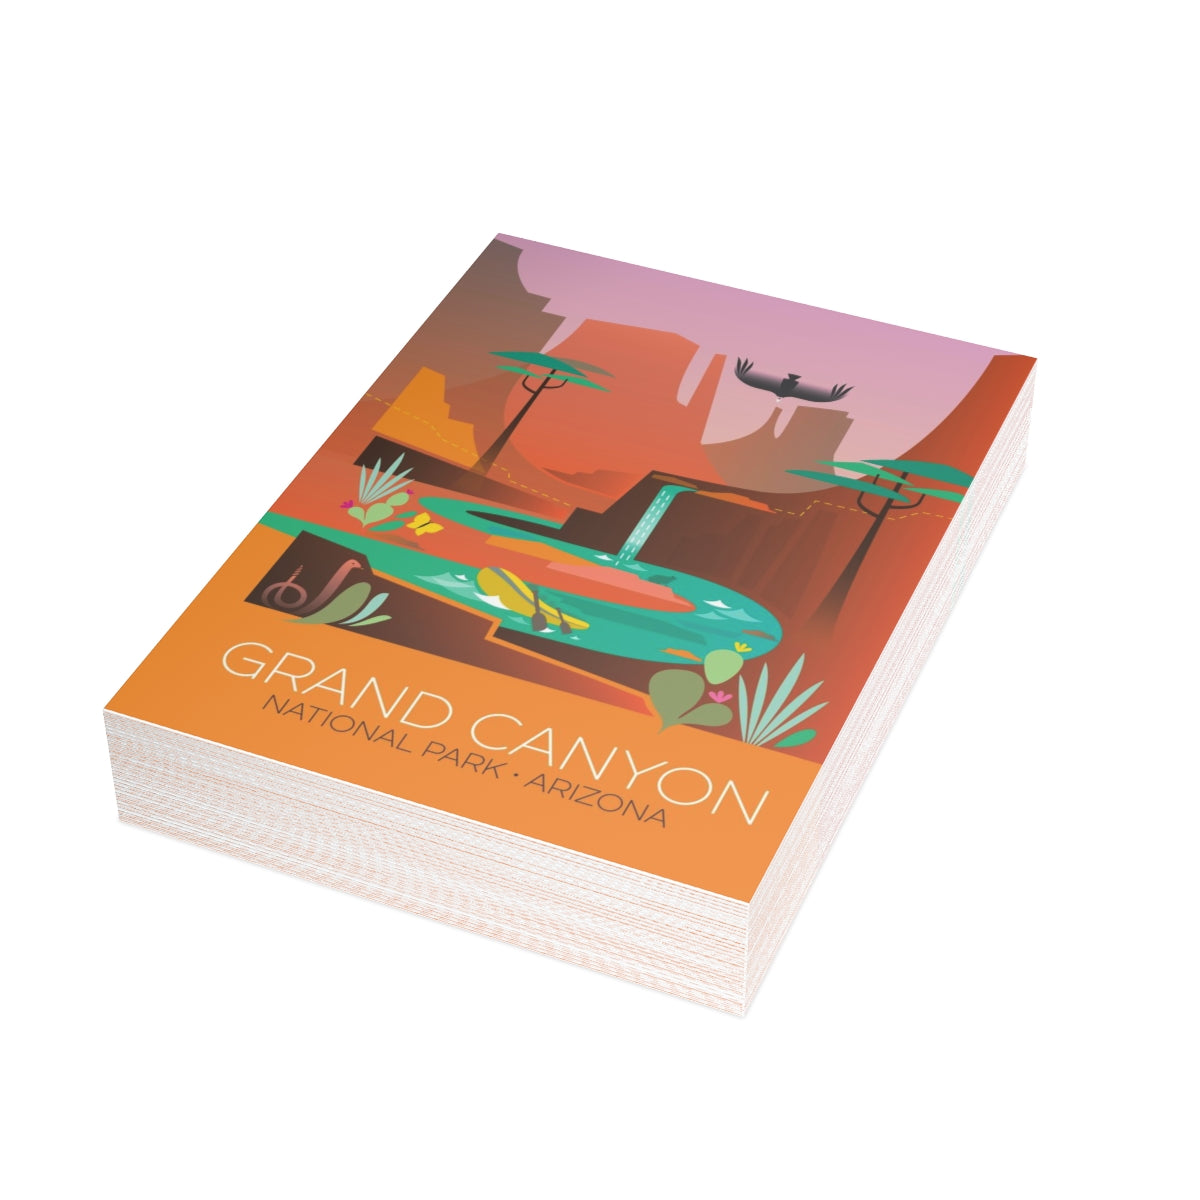 Grand Canyon National Park Matte gefaltete Notizkarten + Umschläge (10 Stück)